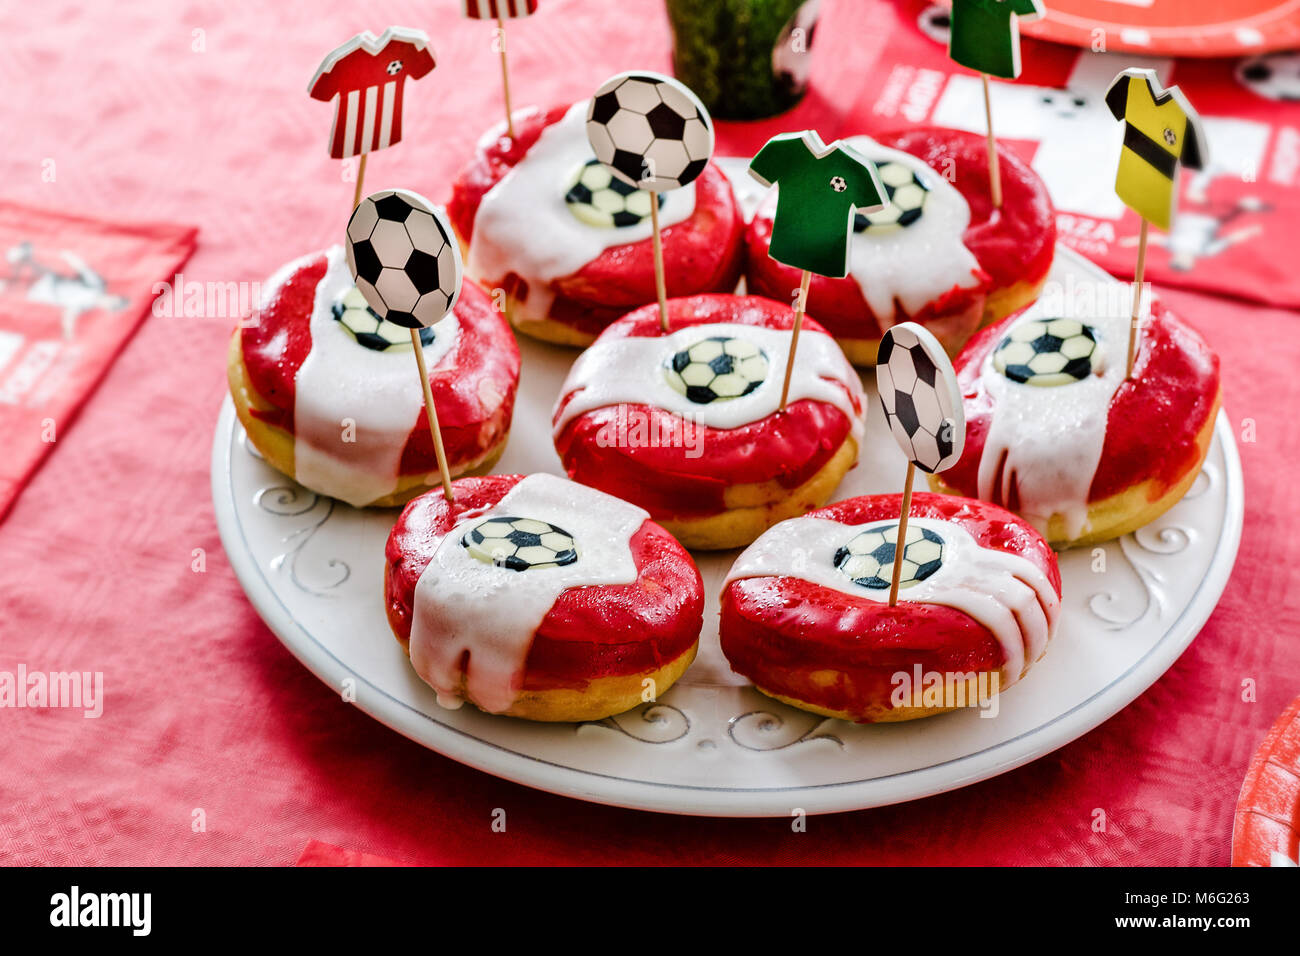 Kindergeburtstag Fußball Thema. Donuts verziert mit Fußbällen und team  Kleider auf Zahnstocher Stockfotografie - Alamy